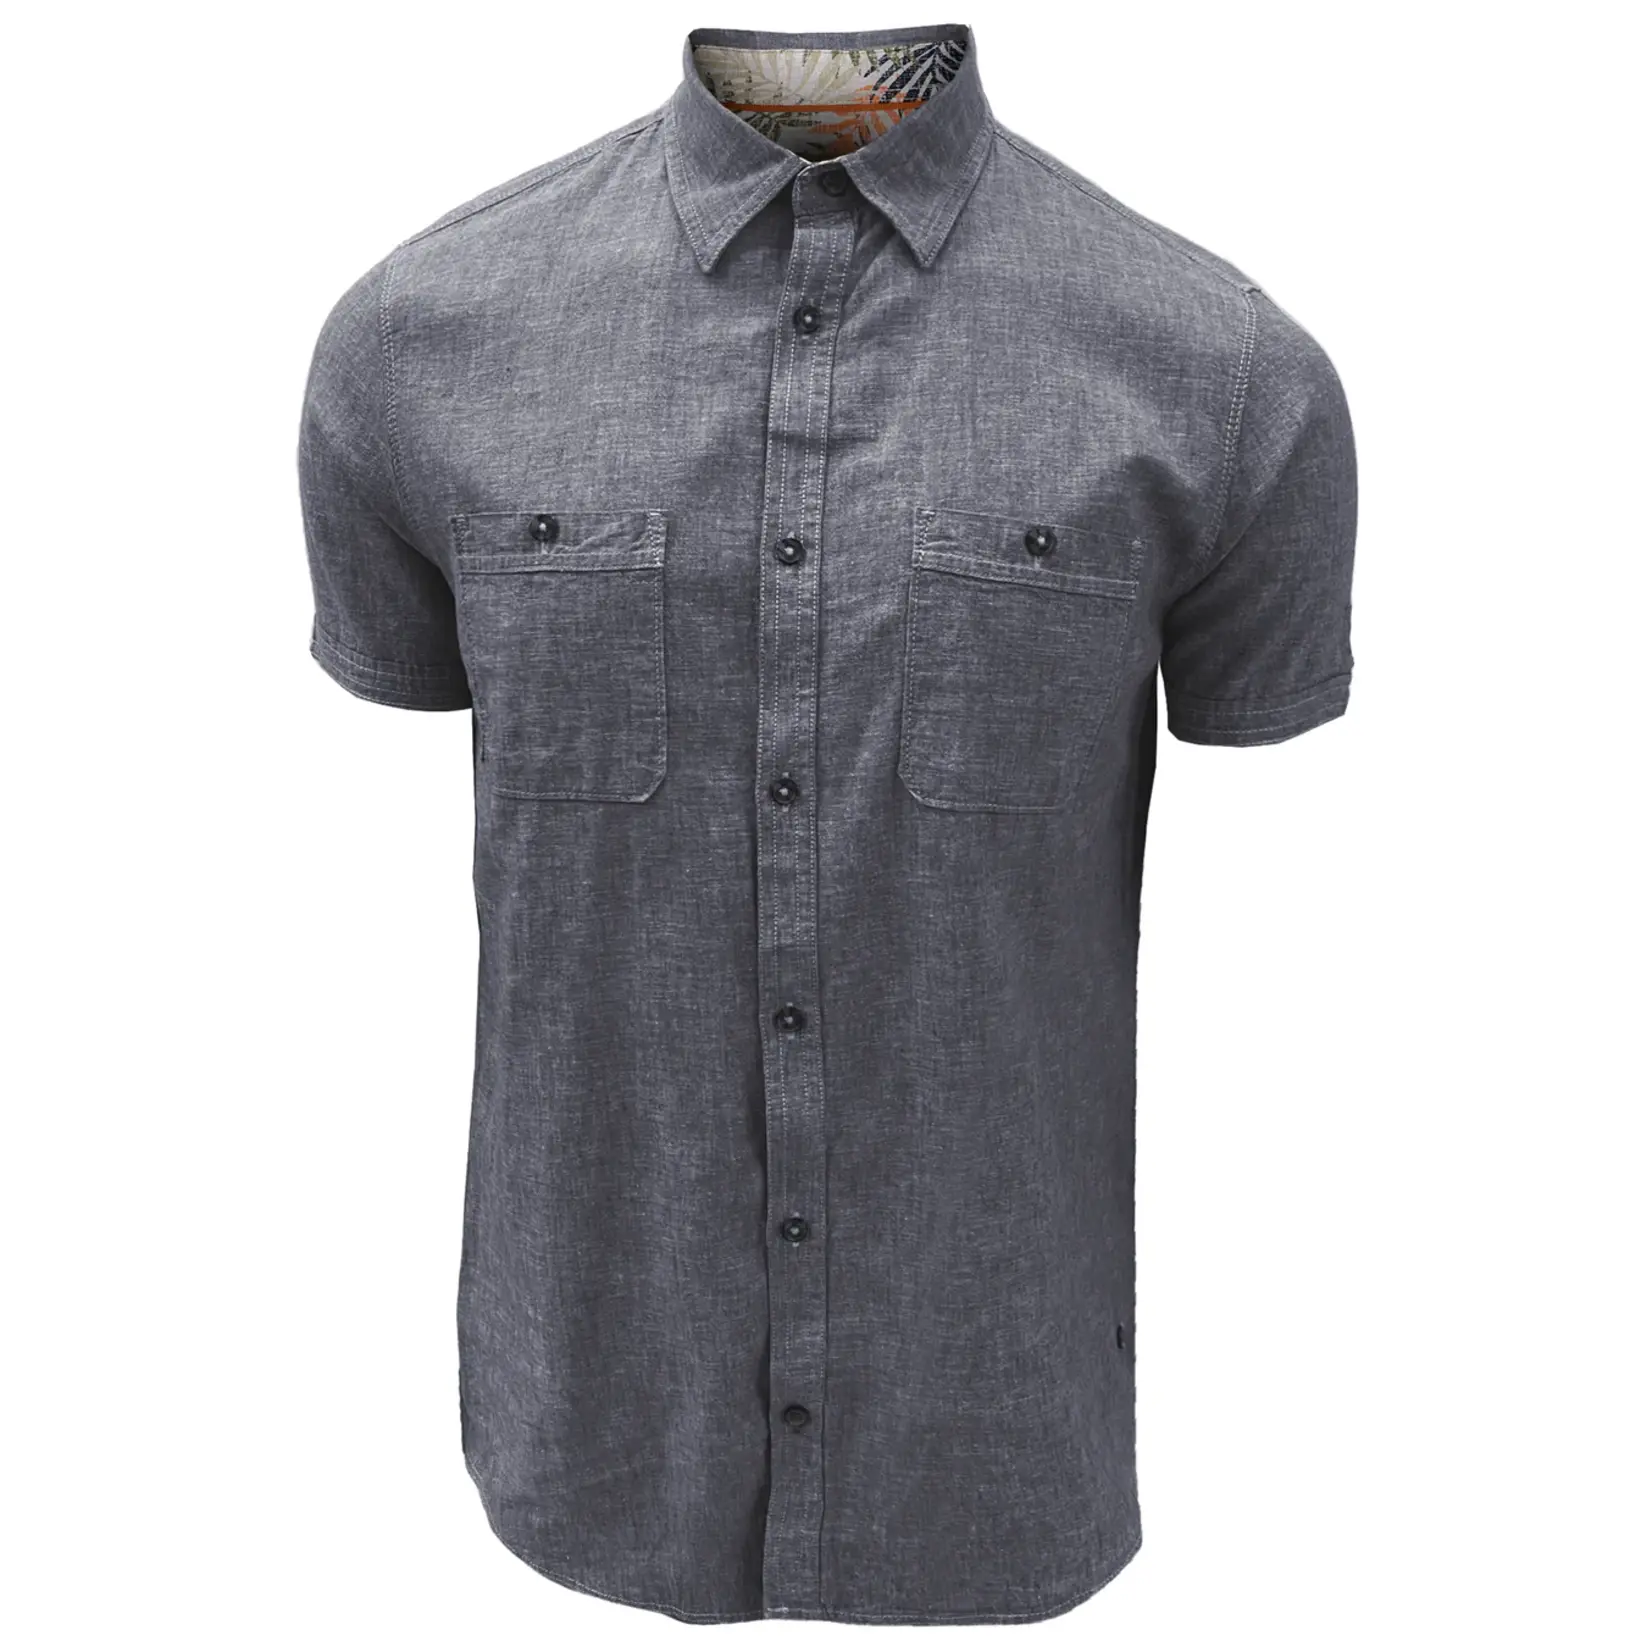 Point Zero Point Zero mens short sleeve light weight button shirt, shirt, tops, top